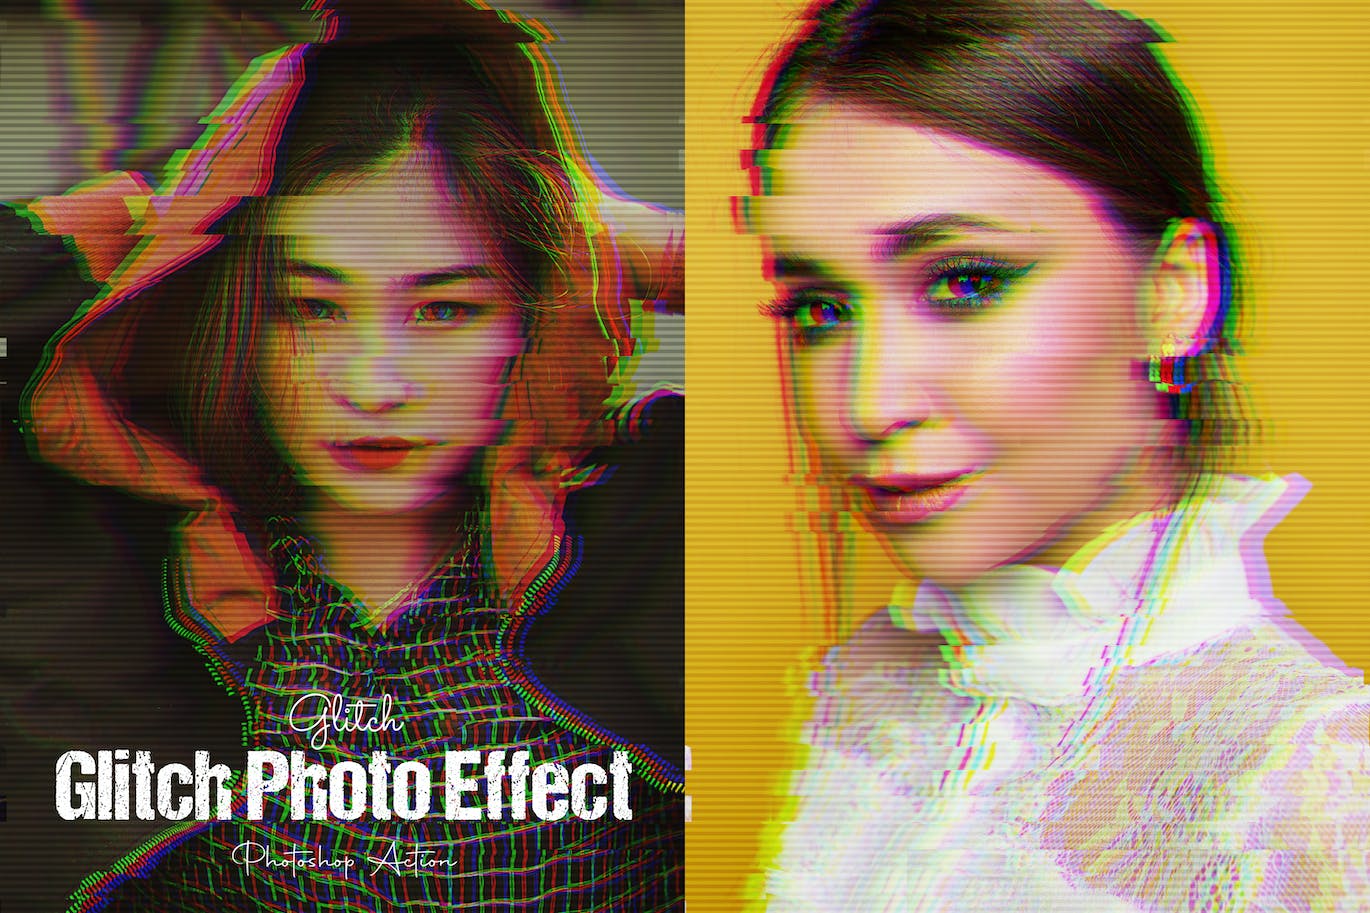 故障失真效果PS动作模板 Glitch Effect Photoshop Action 插件预设 第1张